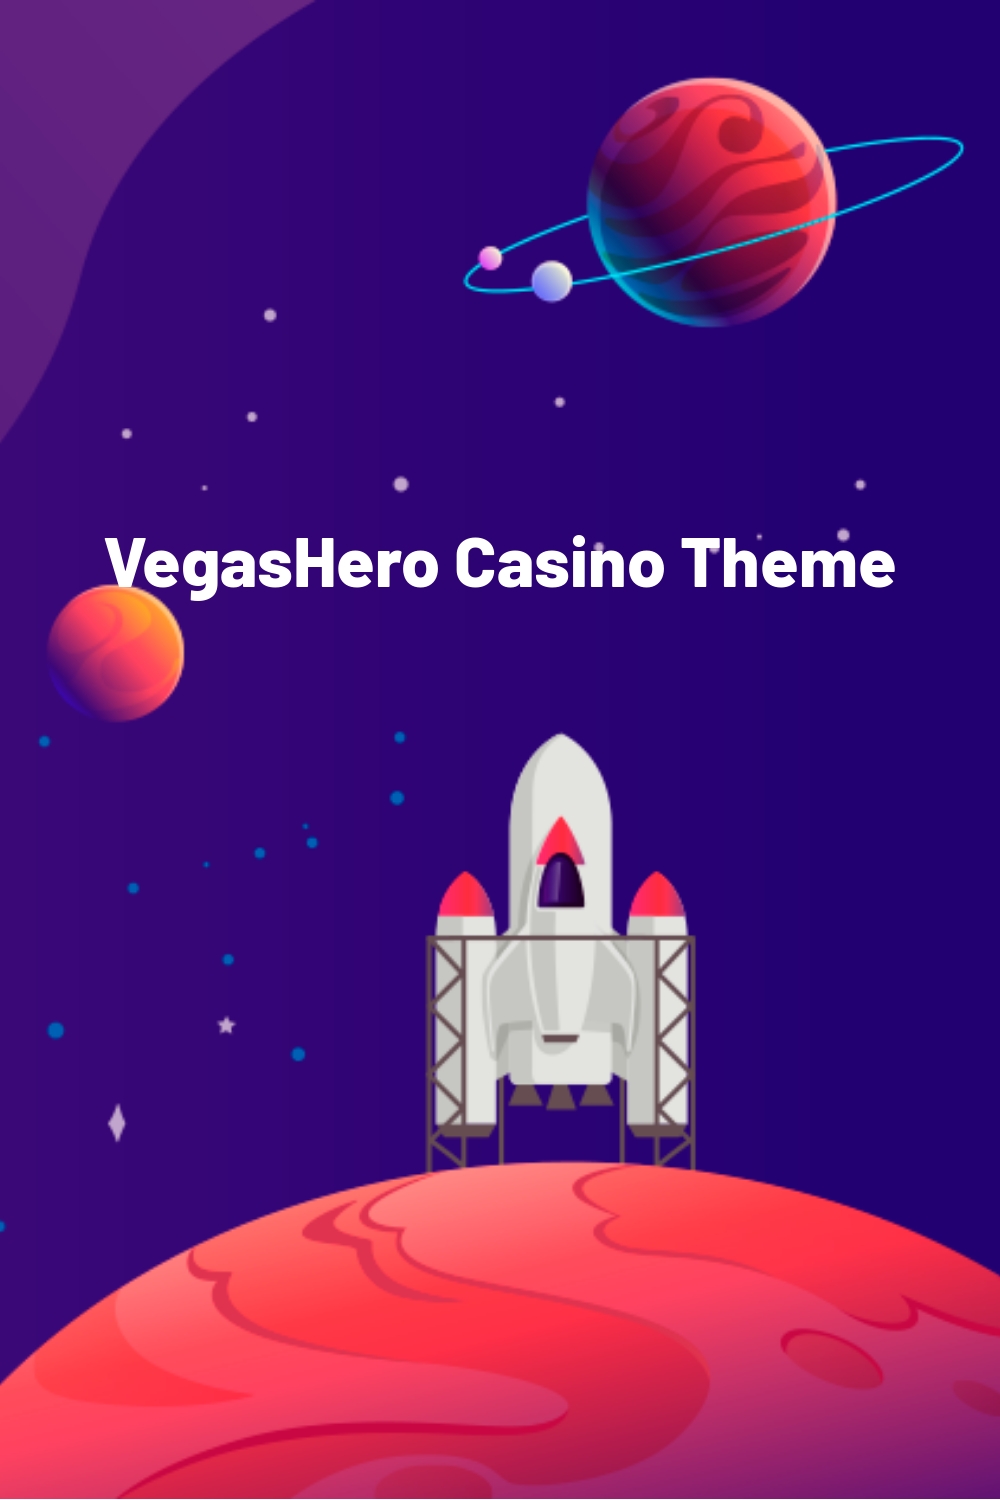 VegasHero Casino Theme